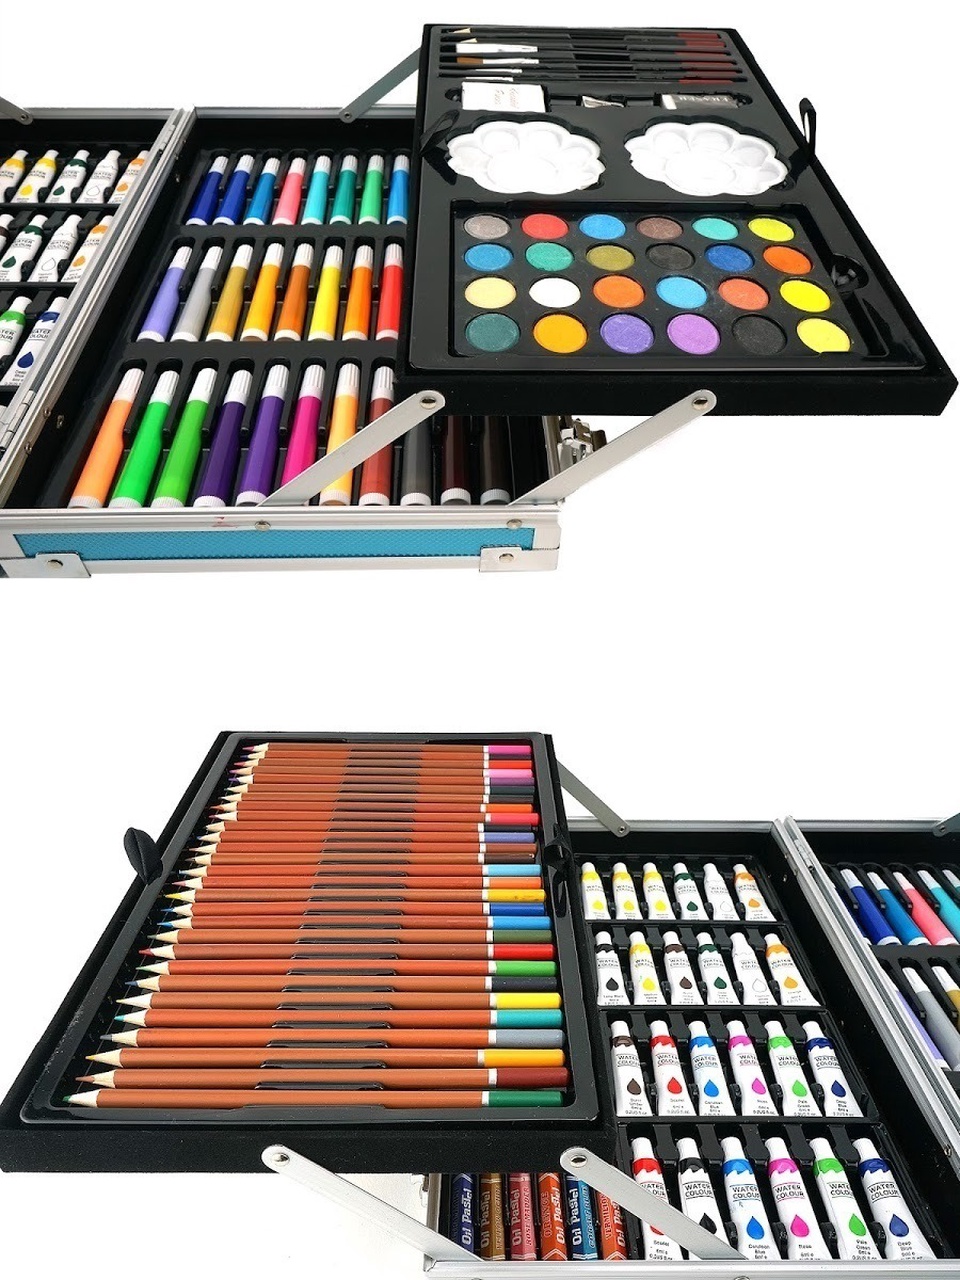 Набор для рисования в металлическом чемодане - 1 900 ₽, заказать онлайн.